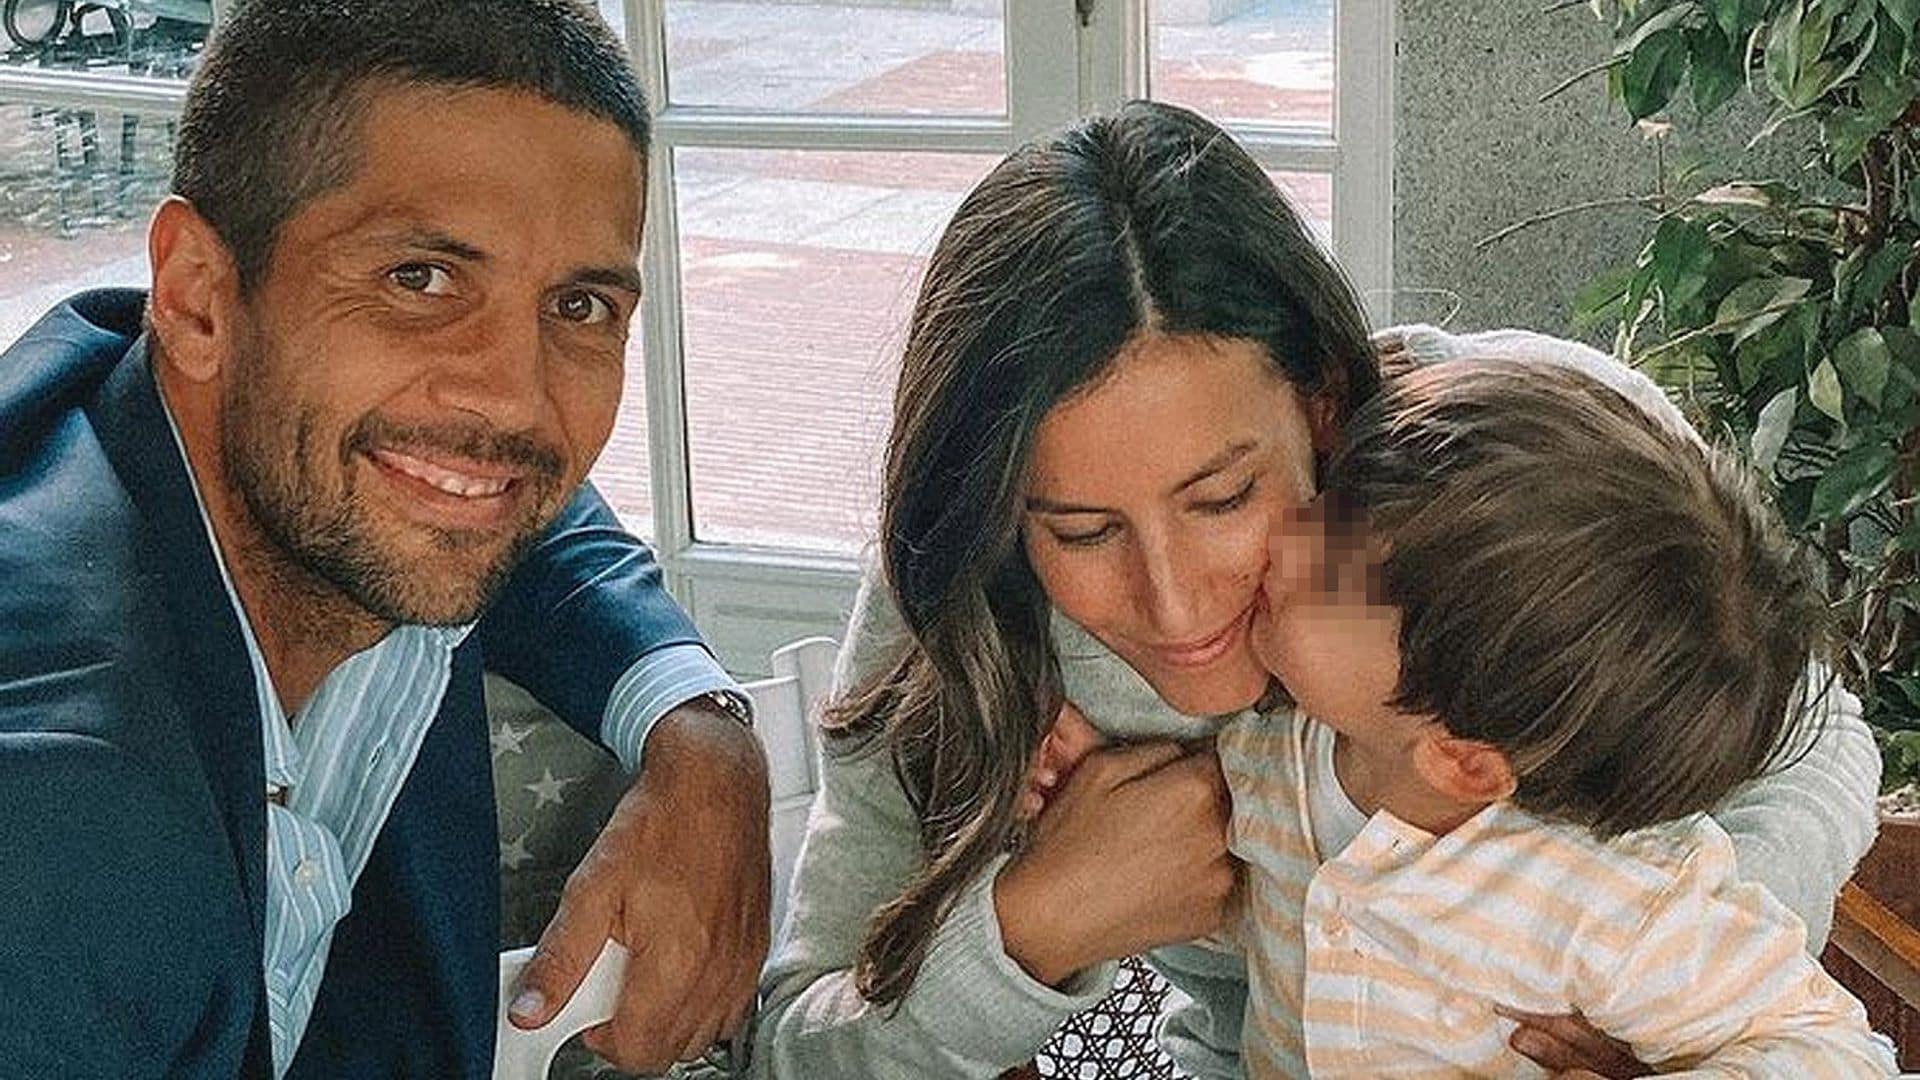 El tierno momento con su hijo Miguel al que Ana Boyer y Fernando Verdasco no pueden resistirse